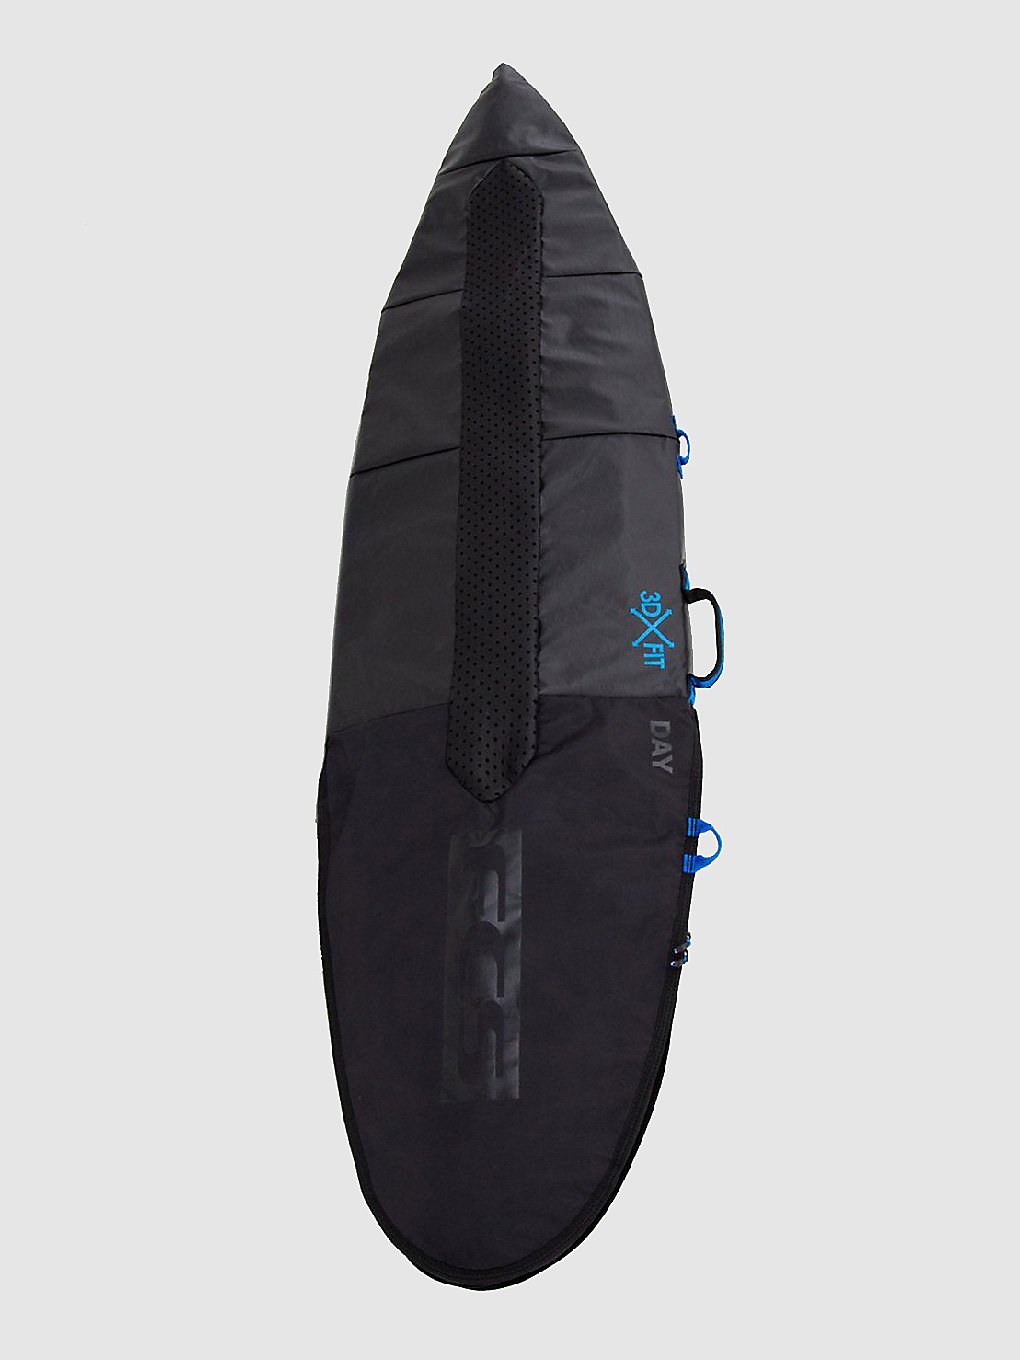 FCS Day All Purpose 5'6 Surfboard-Tasche black kaufen